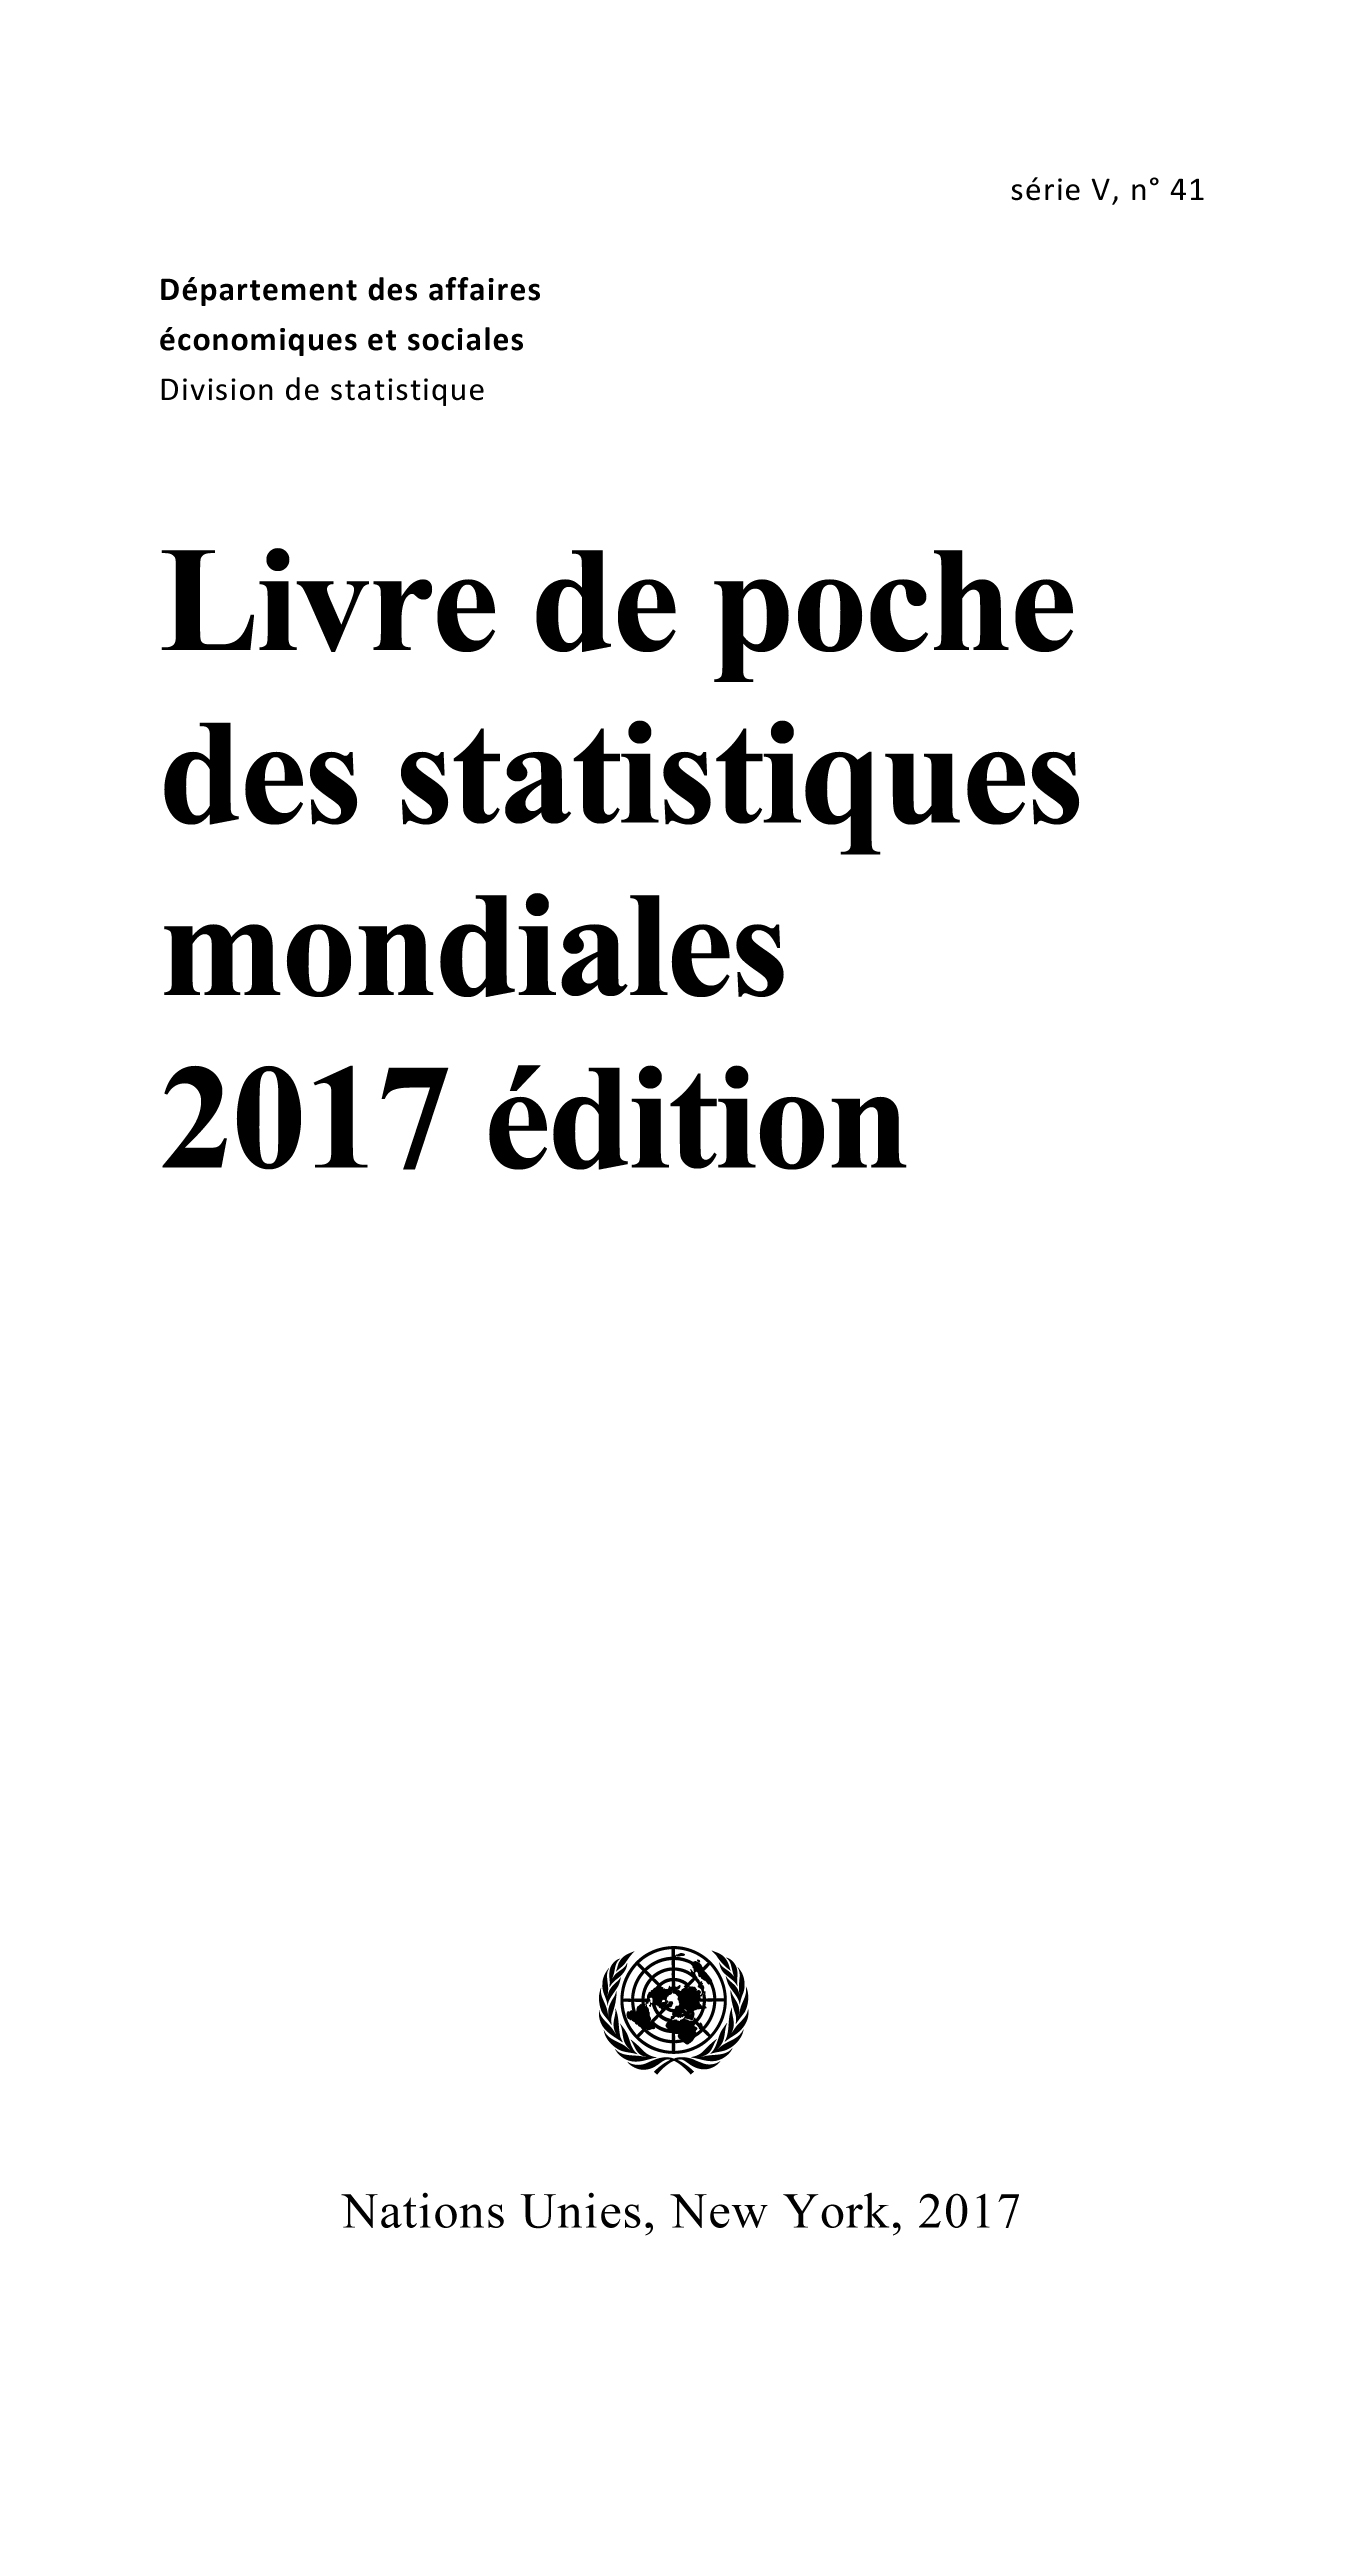 image of Livre de poche des statistiques mondiales 2017